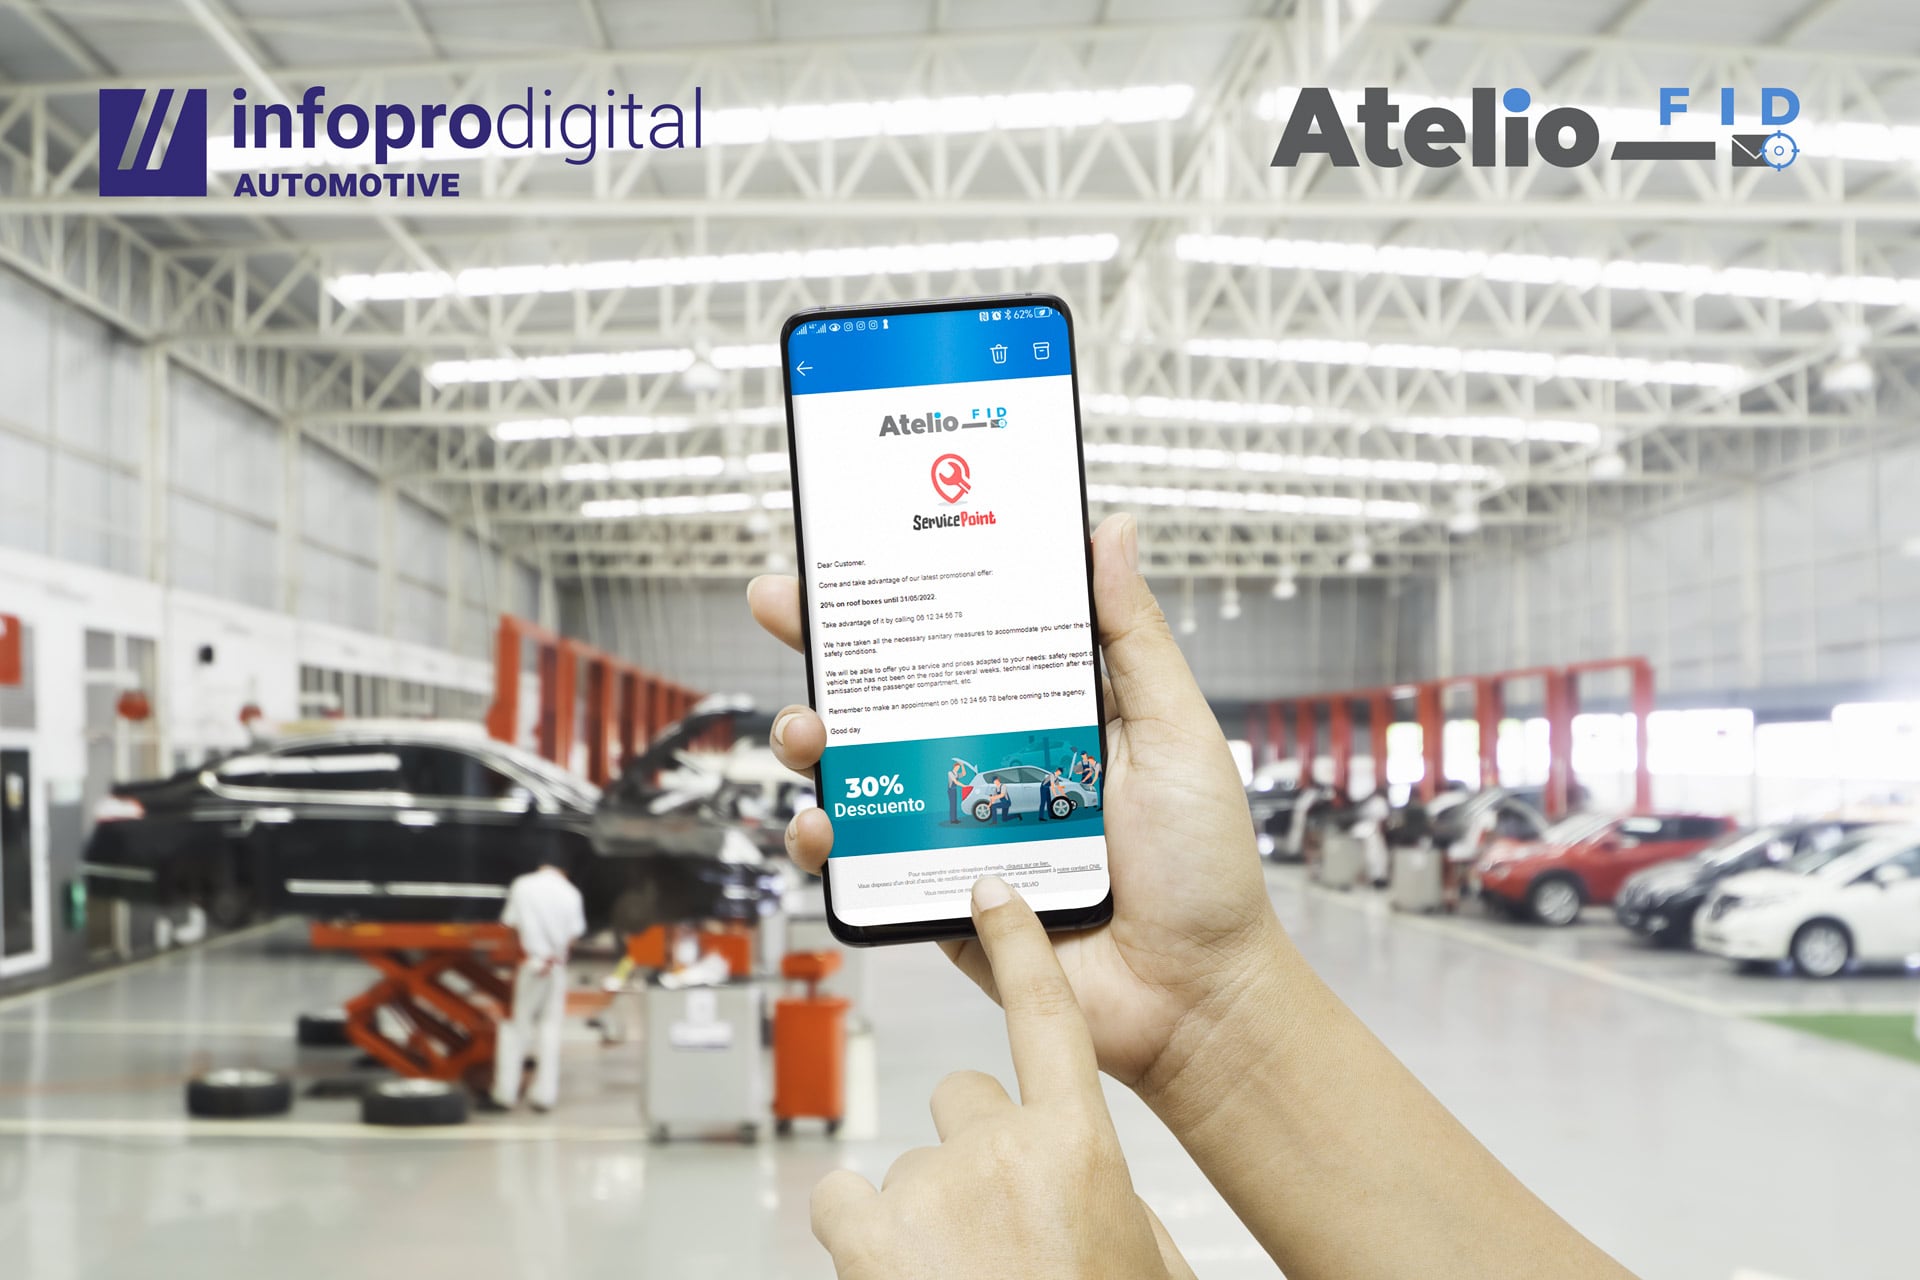 Infopro Digital Automotive lanza en España Atelio FID: un revolucionario software de marketing predictivo para talleres  